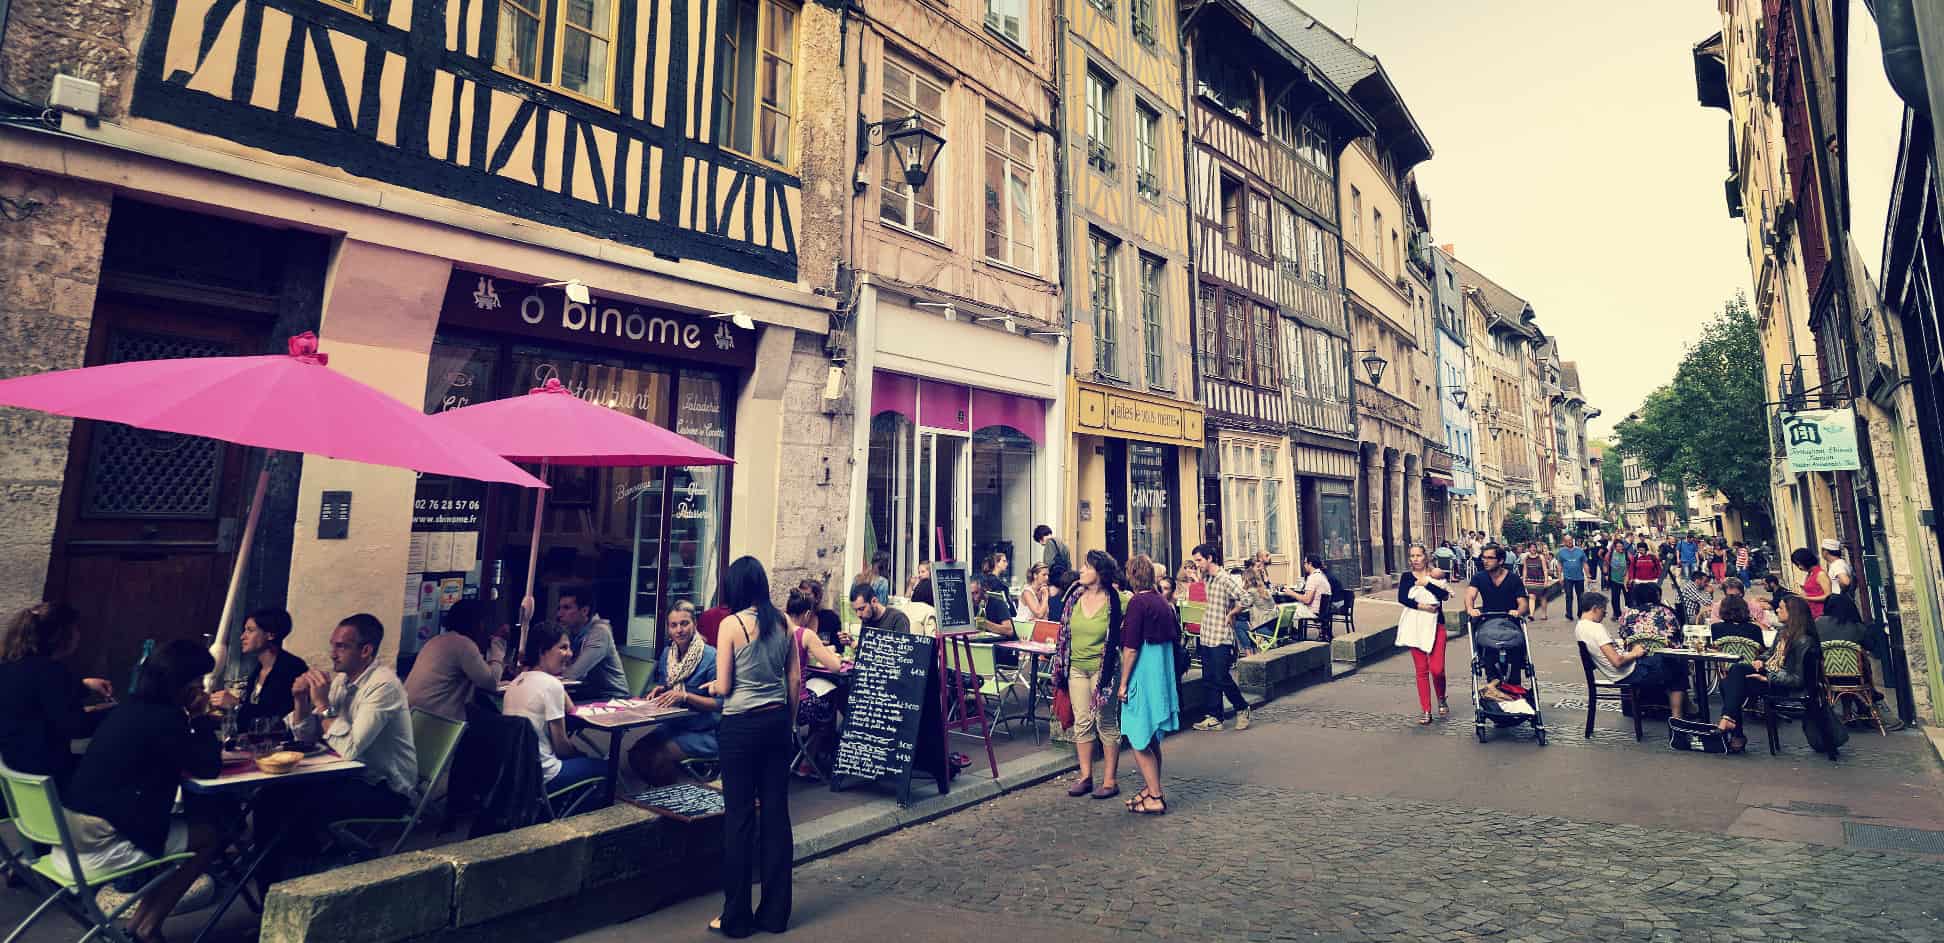 terraces in Rouen